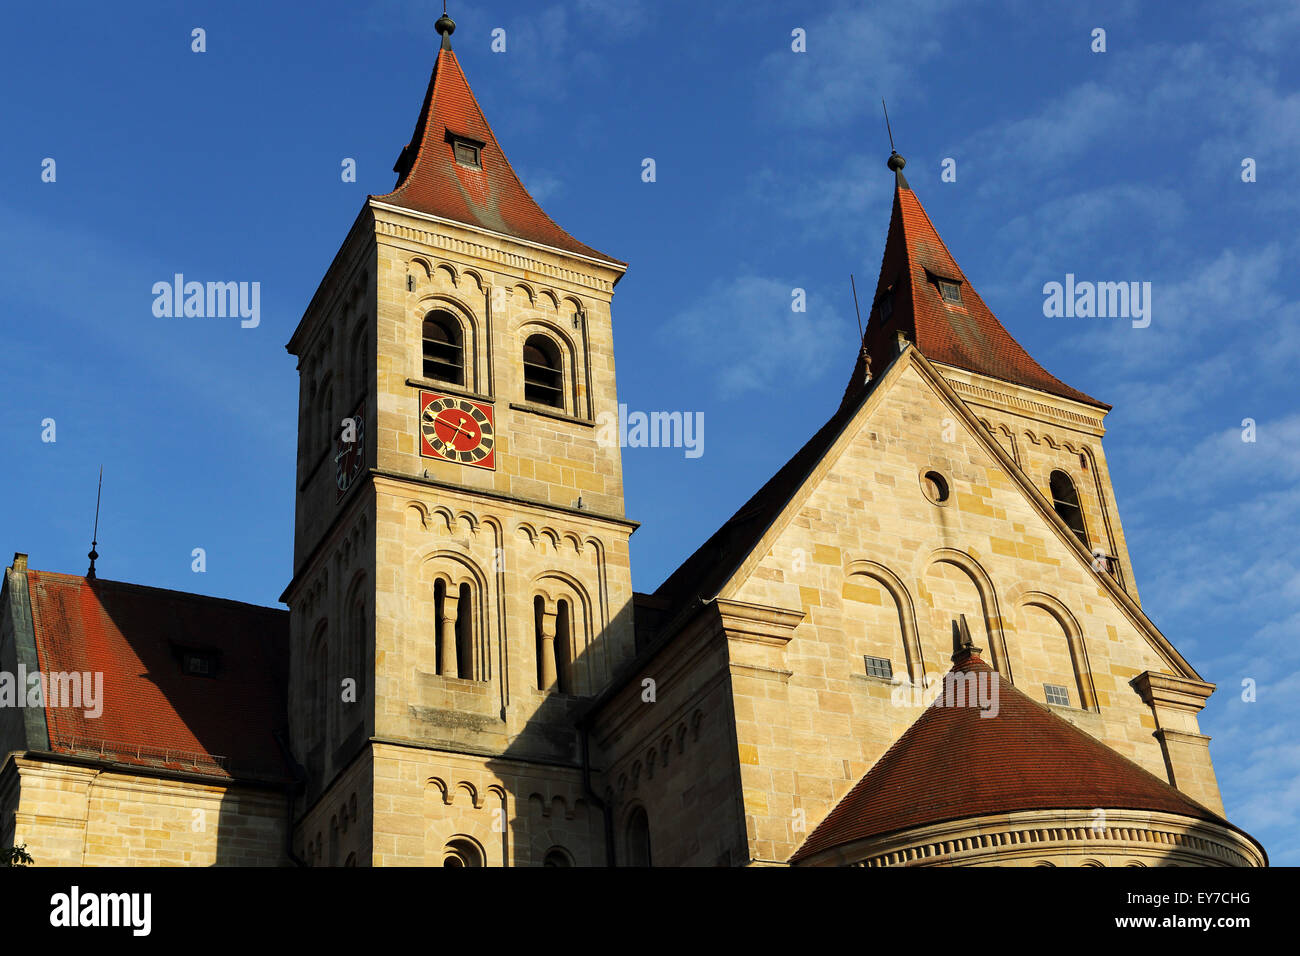 St Vitus's Basilica of Ellwangen Abbey in Ellwangen an der Jagst, Germany. Stock Photo